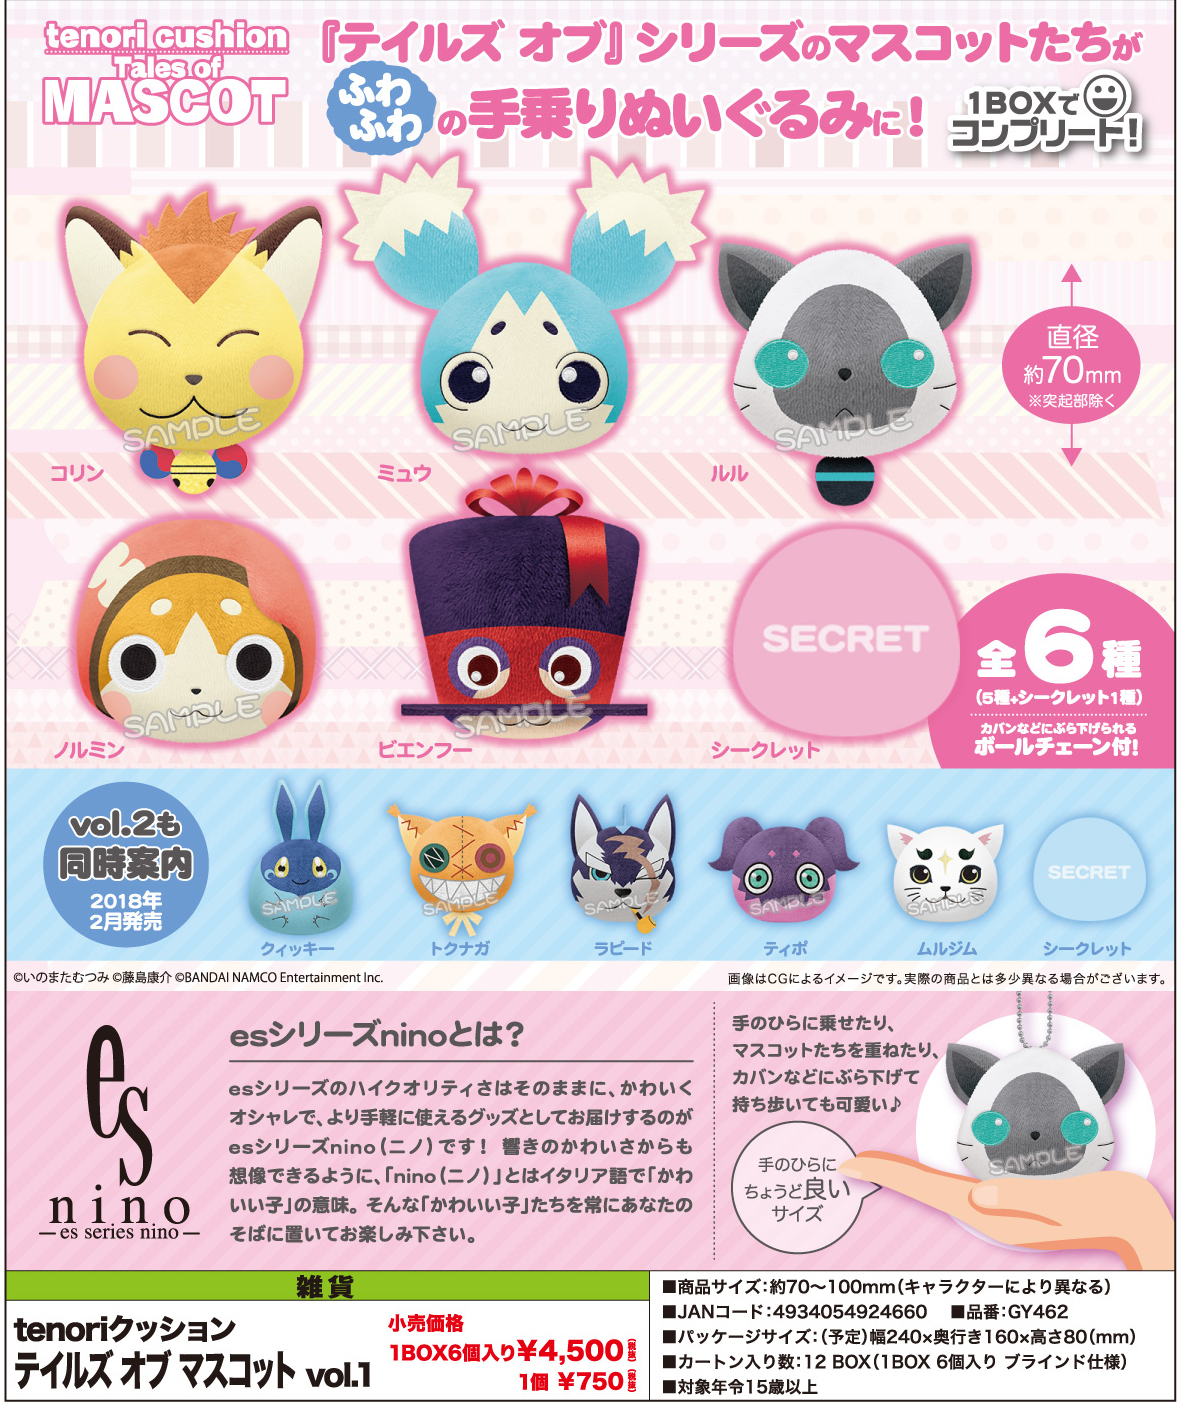 【B】盒蛋 tenori系列 传说系列 吉祥物 玩偶挂件Vol.1 全6种 924660